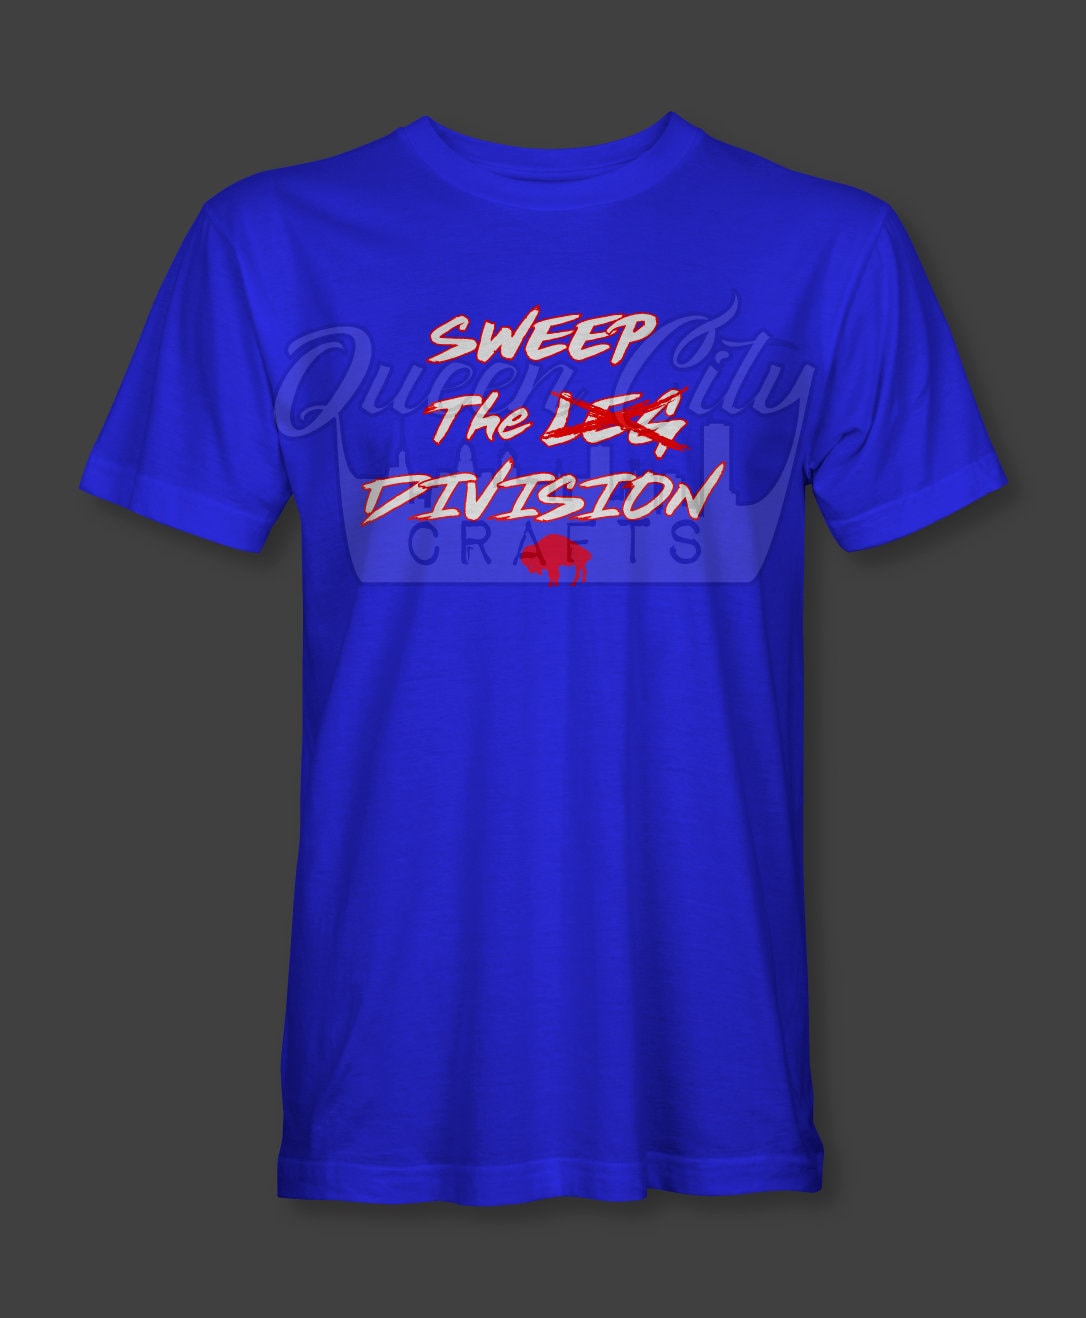 Buffalo Football Sweep the Division shirt